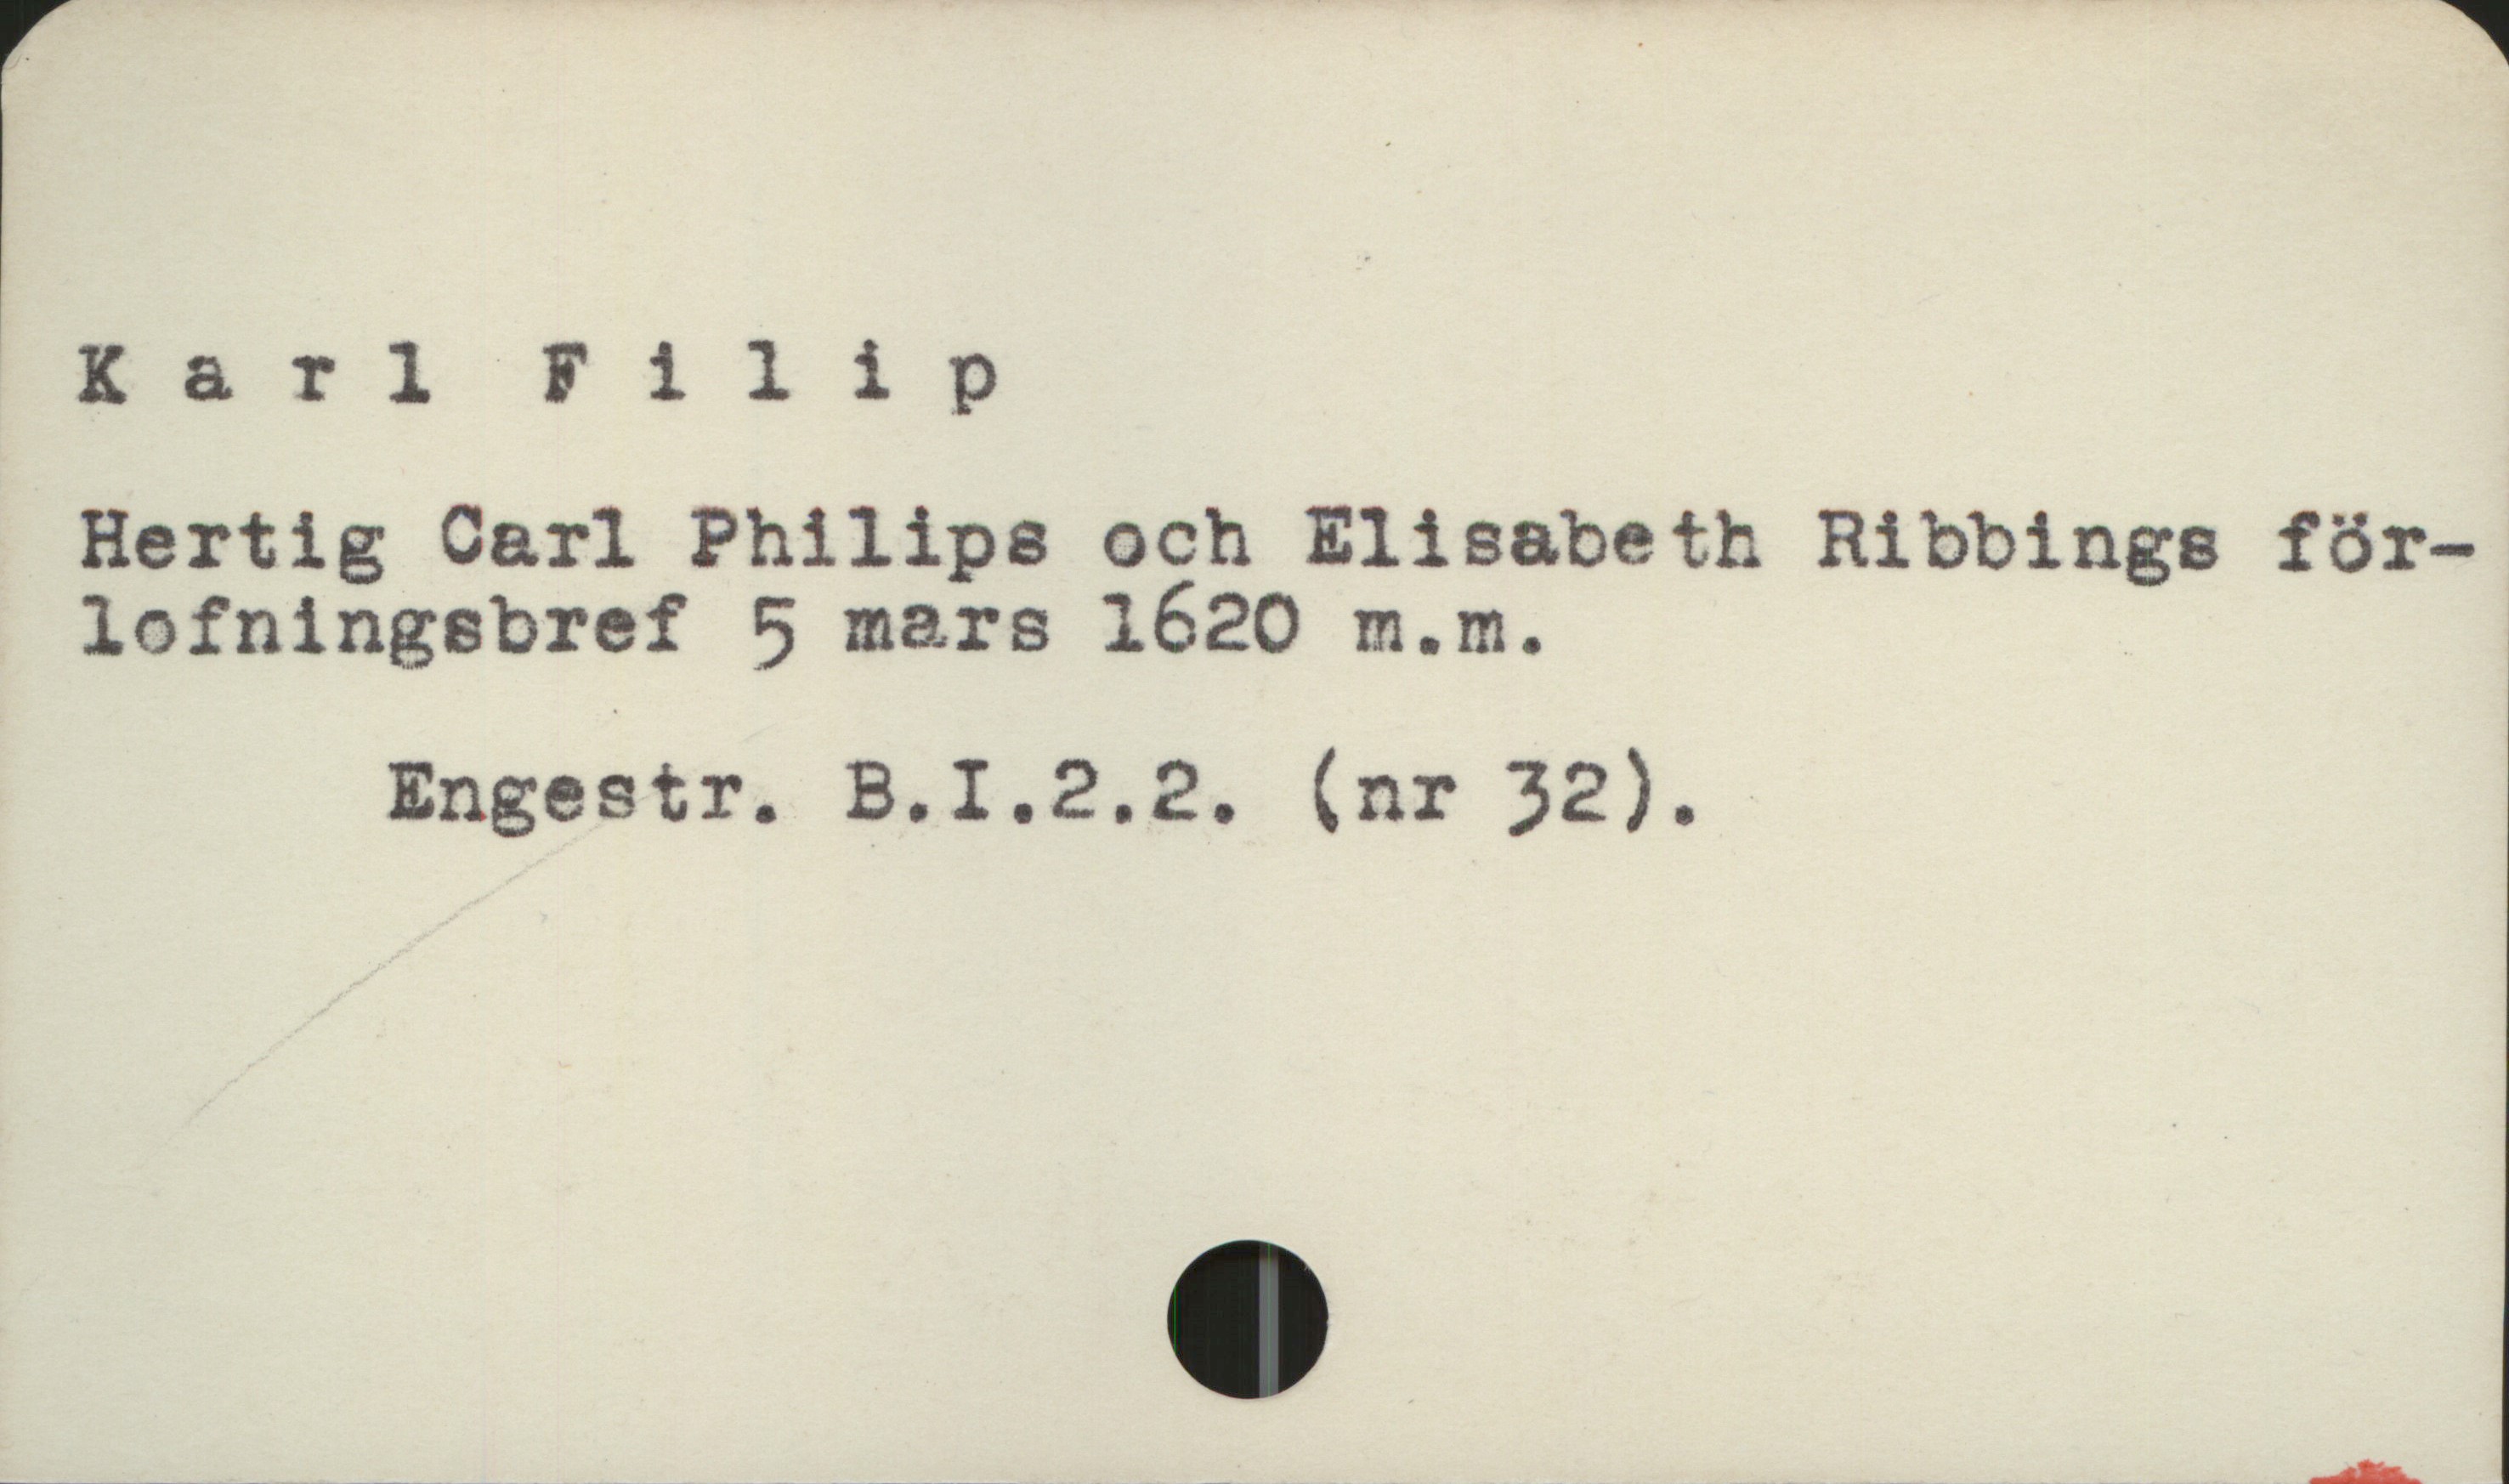  Karl Filip
Hertig Carl Philips och Elisabeth Ribbings för-
lofningsbref 5 mars 1620 m.m.

Engestr. B.I.2.2. (nr 32).

